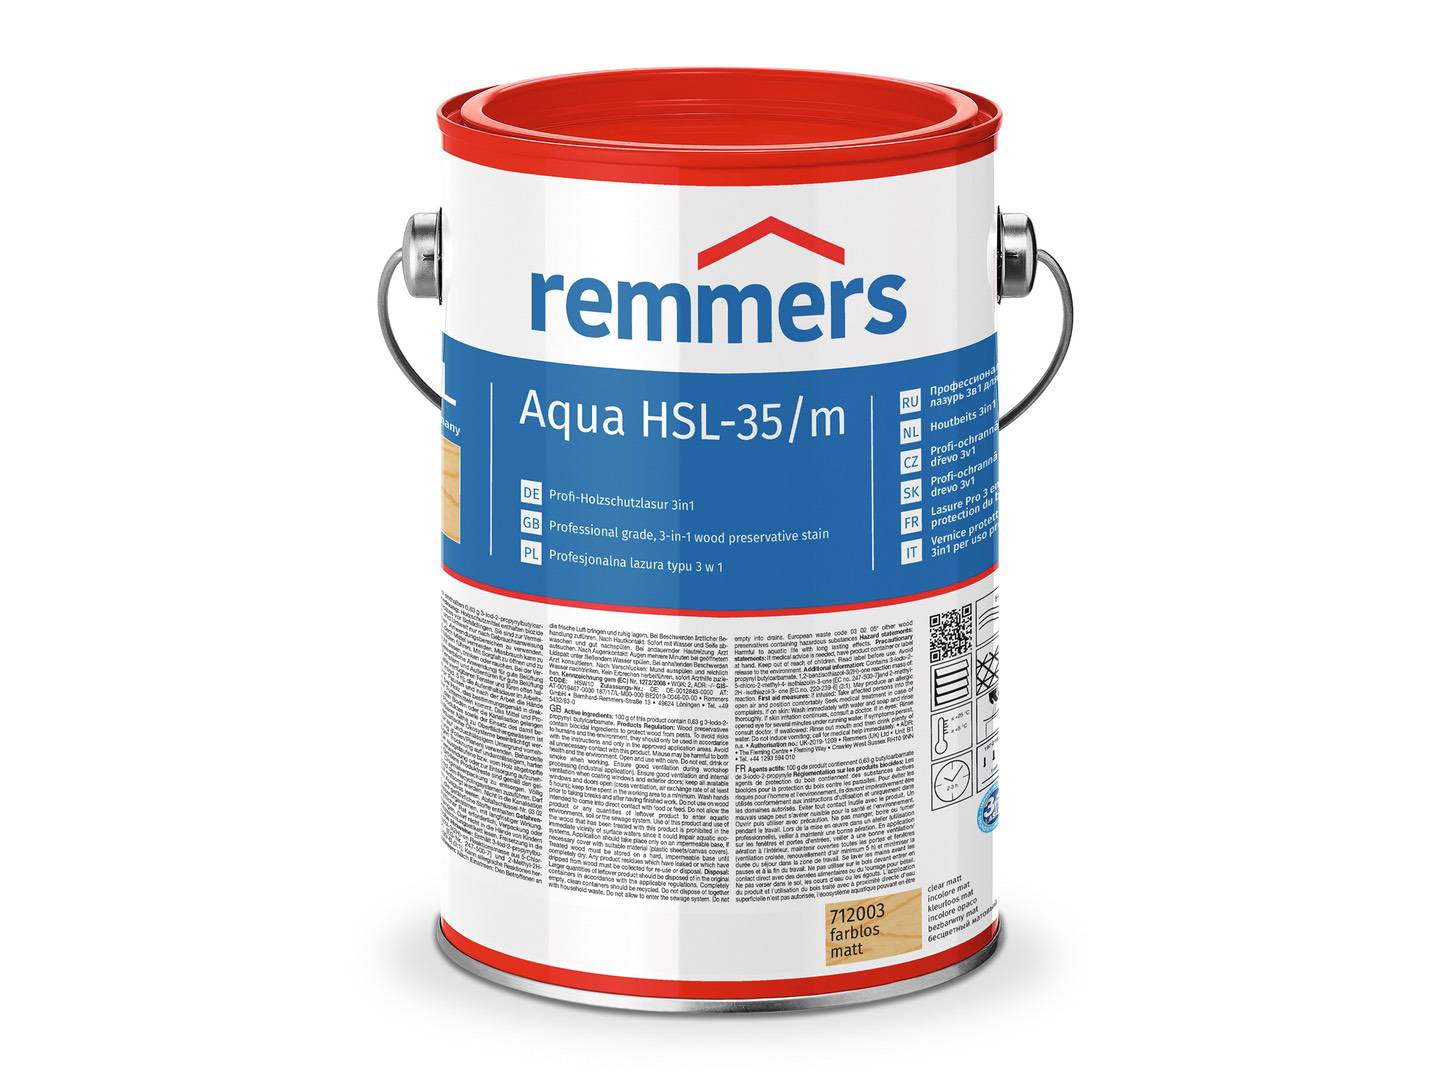 REMMERS Aqua HSL-35/m-Profi-Holzschutz-Lasur 3in1 farblos 2,50 l